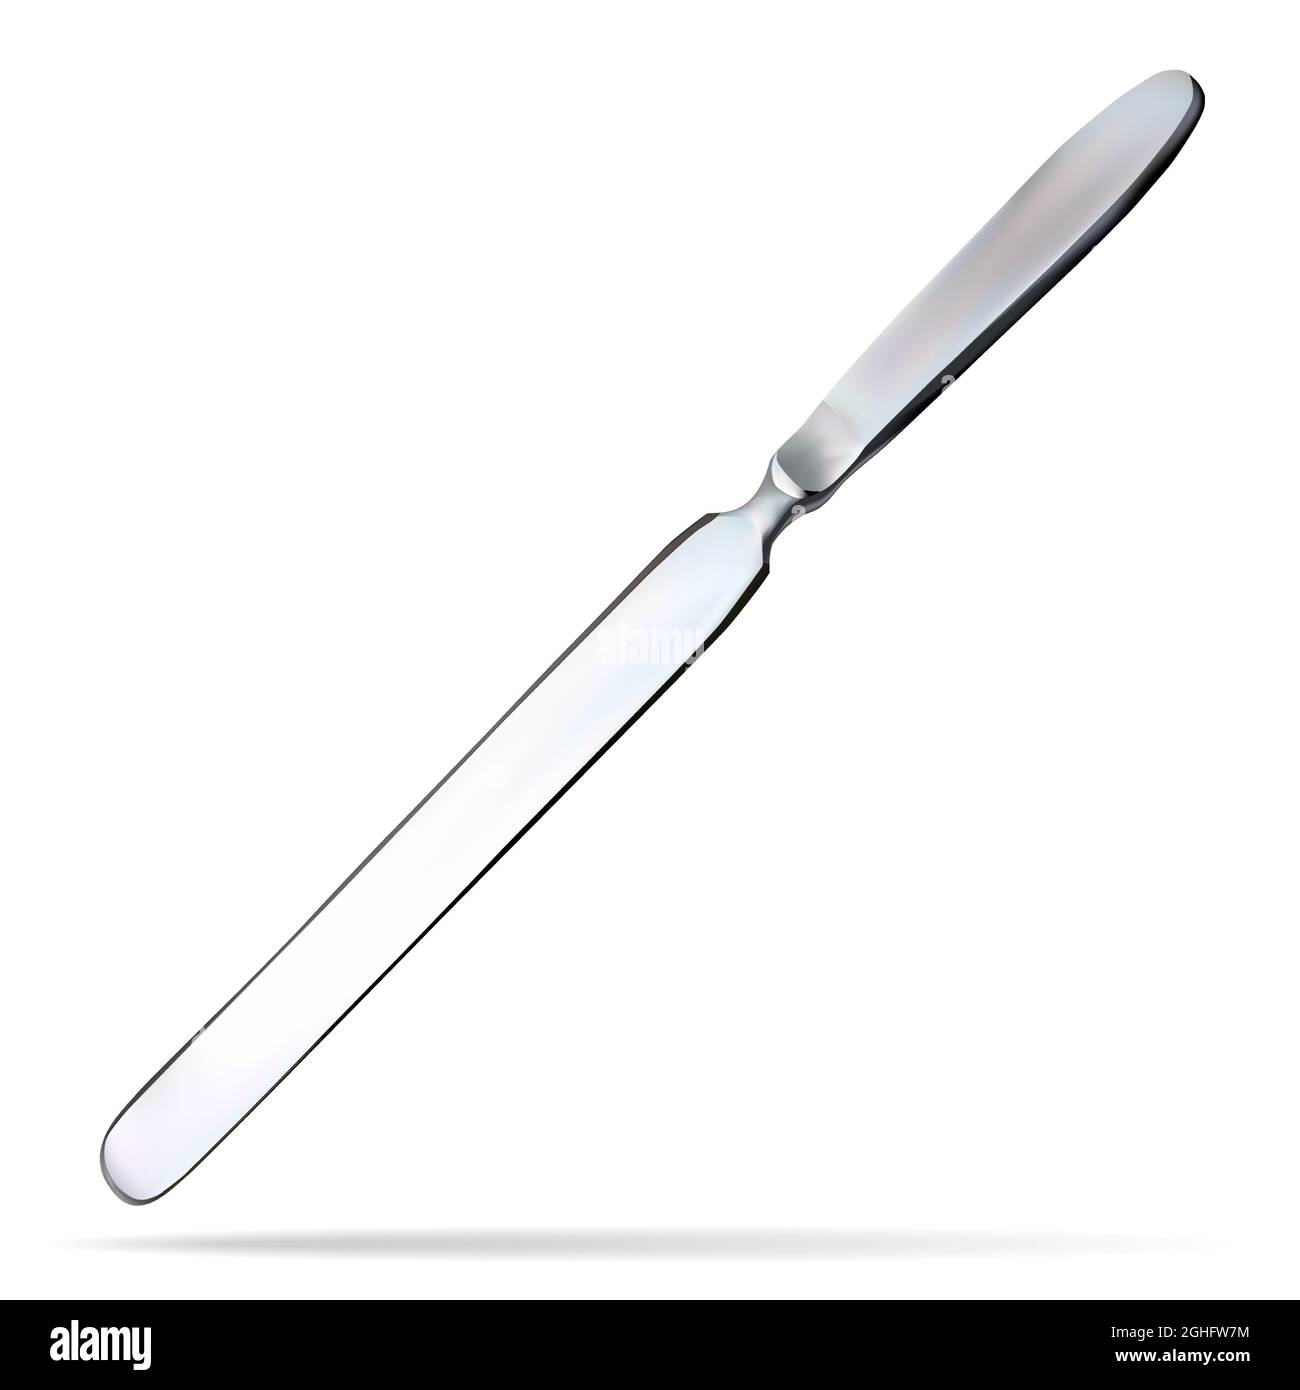 Hirnmesser. Zweischneidiges Messer mit einer langen, flachen, abgerundeten  Klinge am Ende. Chirurgisches Instrument. Vektorgrafik Stock-Vektorgrafik -  Alamy